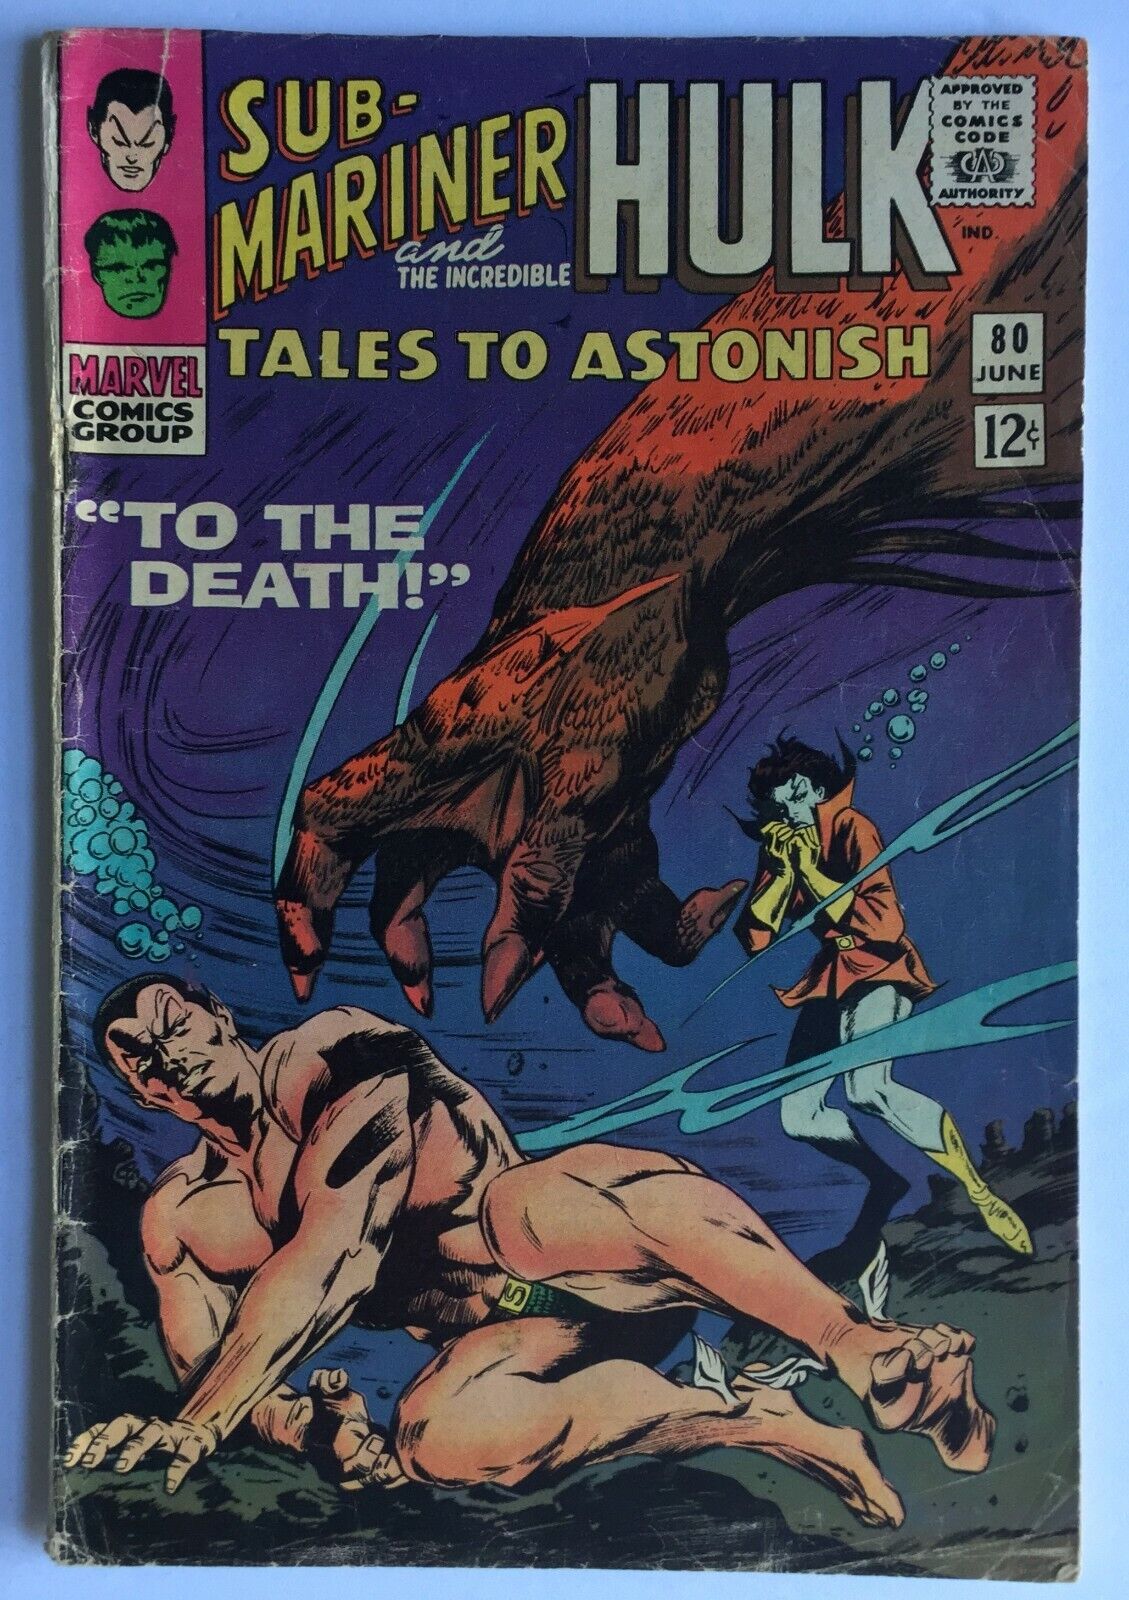 Sub-Mariner and The Incredible Hulk Tales To Astonish #80 (Jun 1966, Marvel)